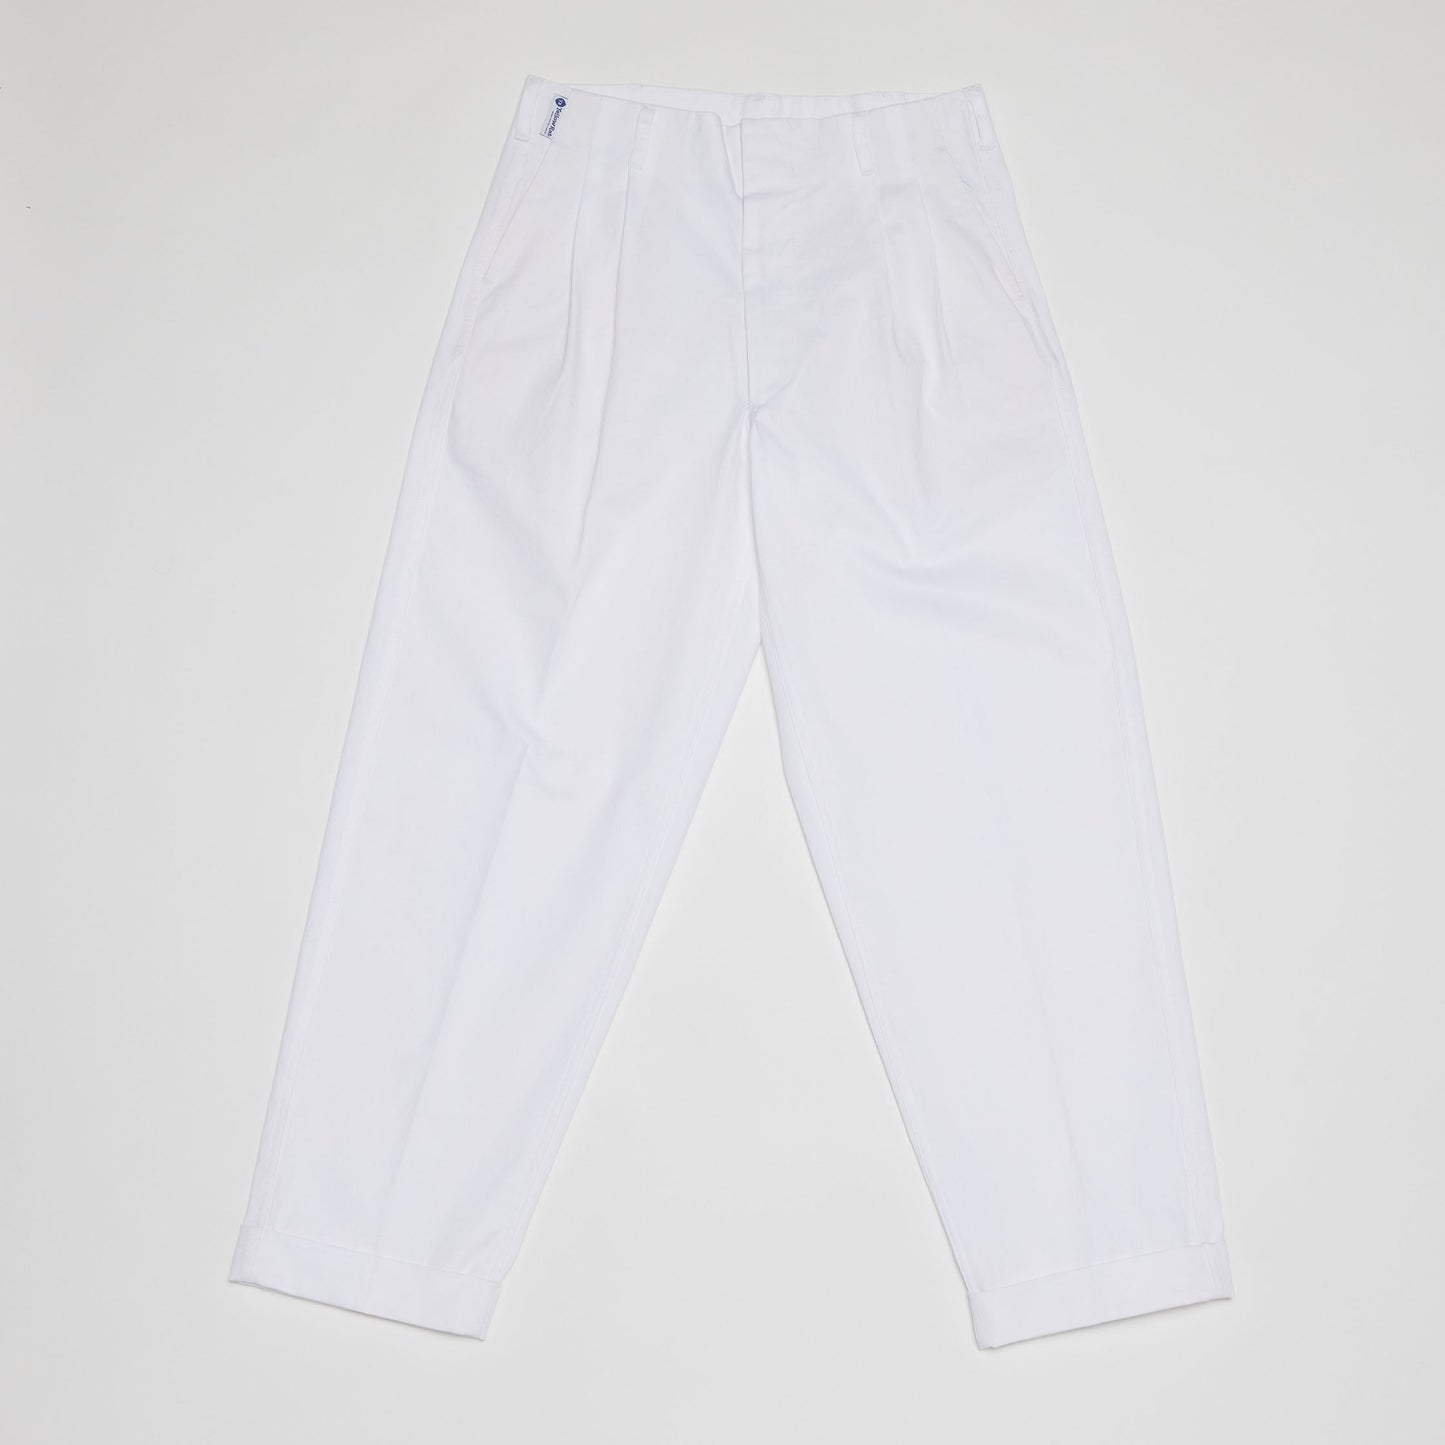 Peg-top Pants (White)